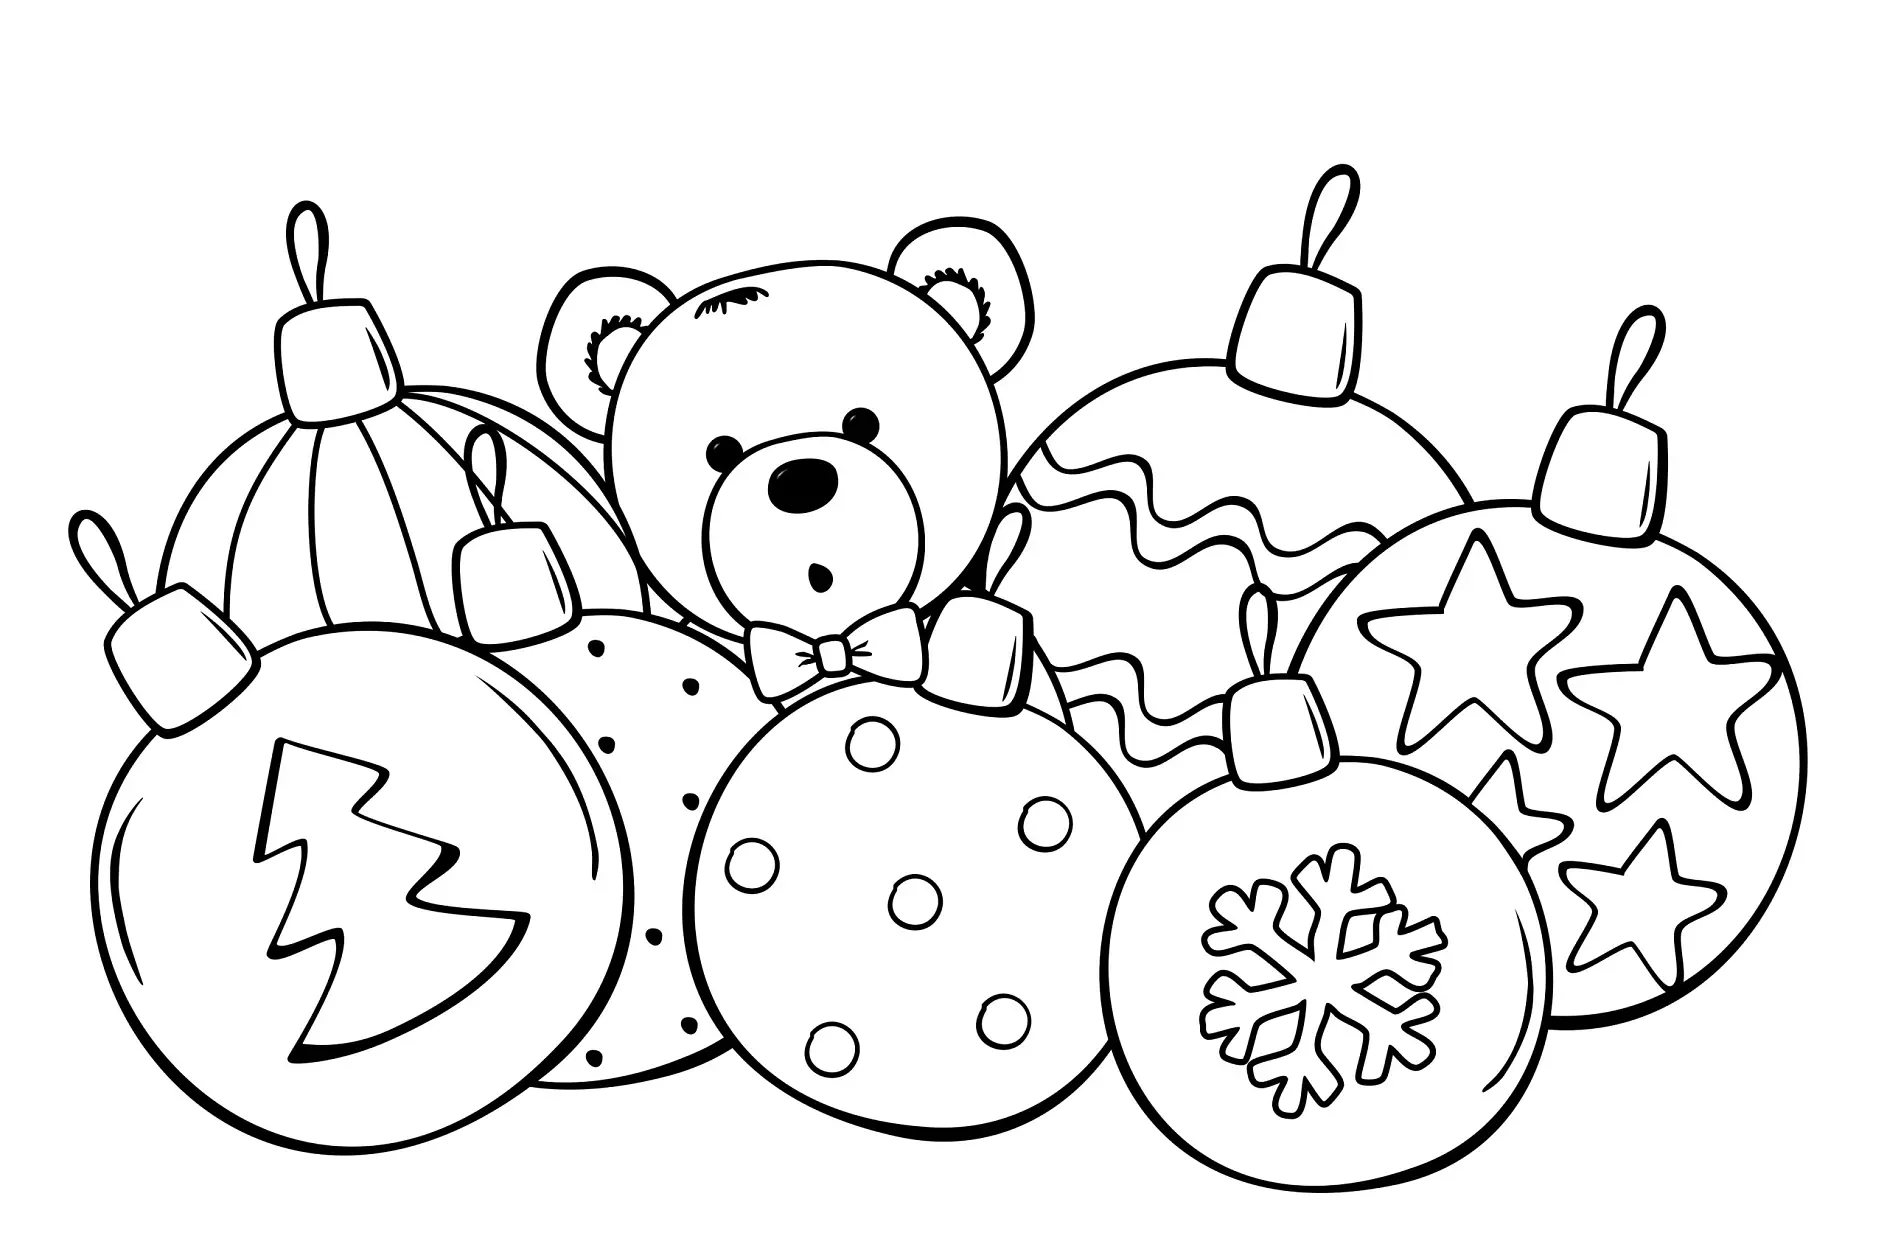 Ausmalbild mit Weihnachtskugeln und Teddybär in der Mitte